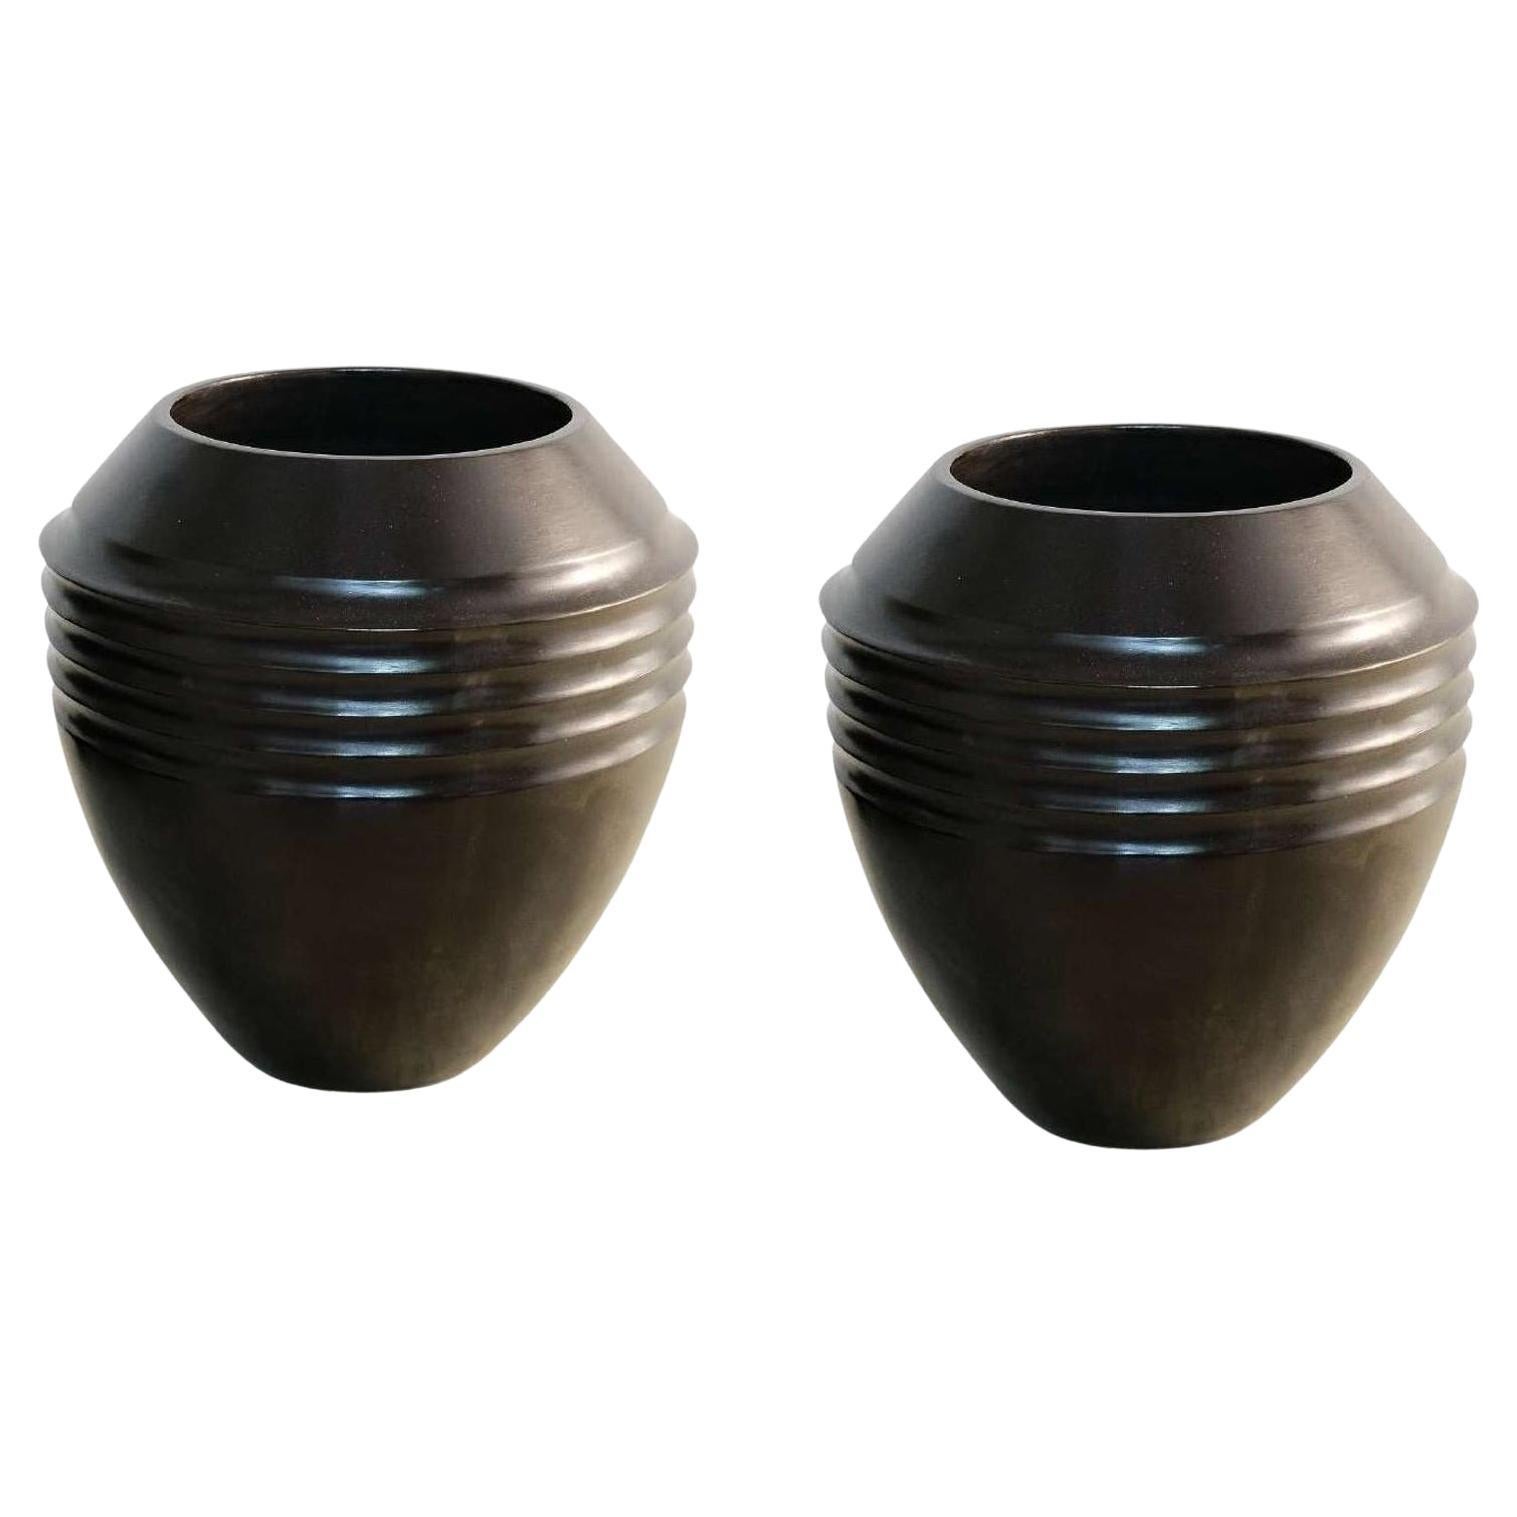 Ein Paar kaskabelförmige Vasen von Onora